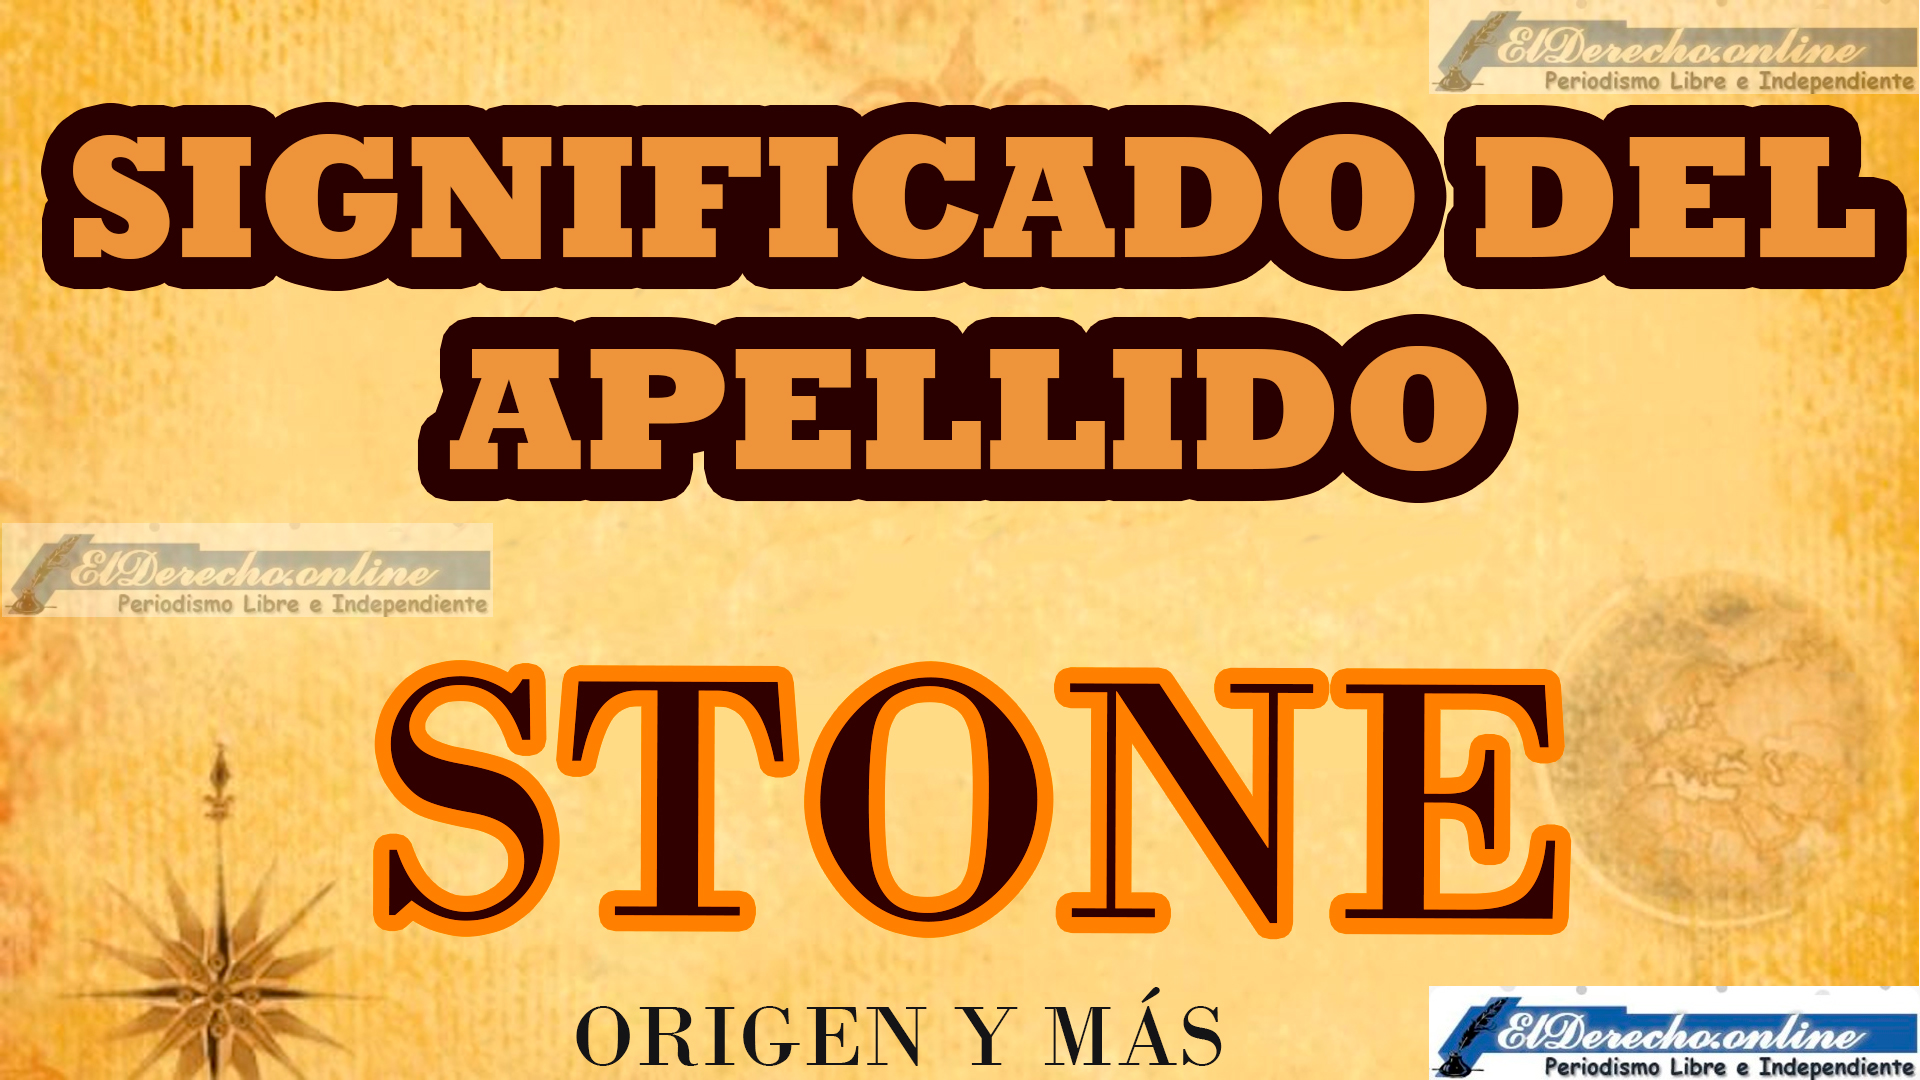 Significado del apellido Stone, Origen y más